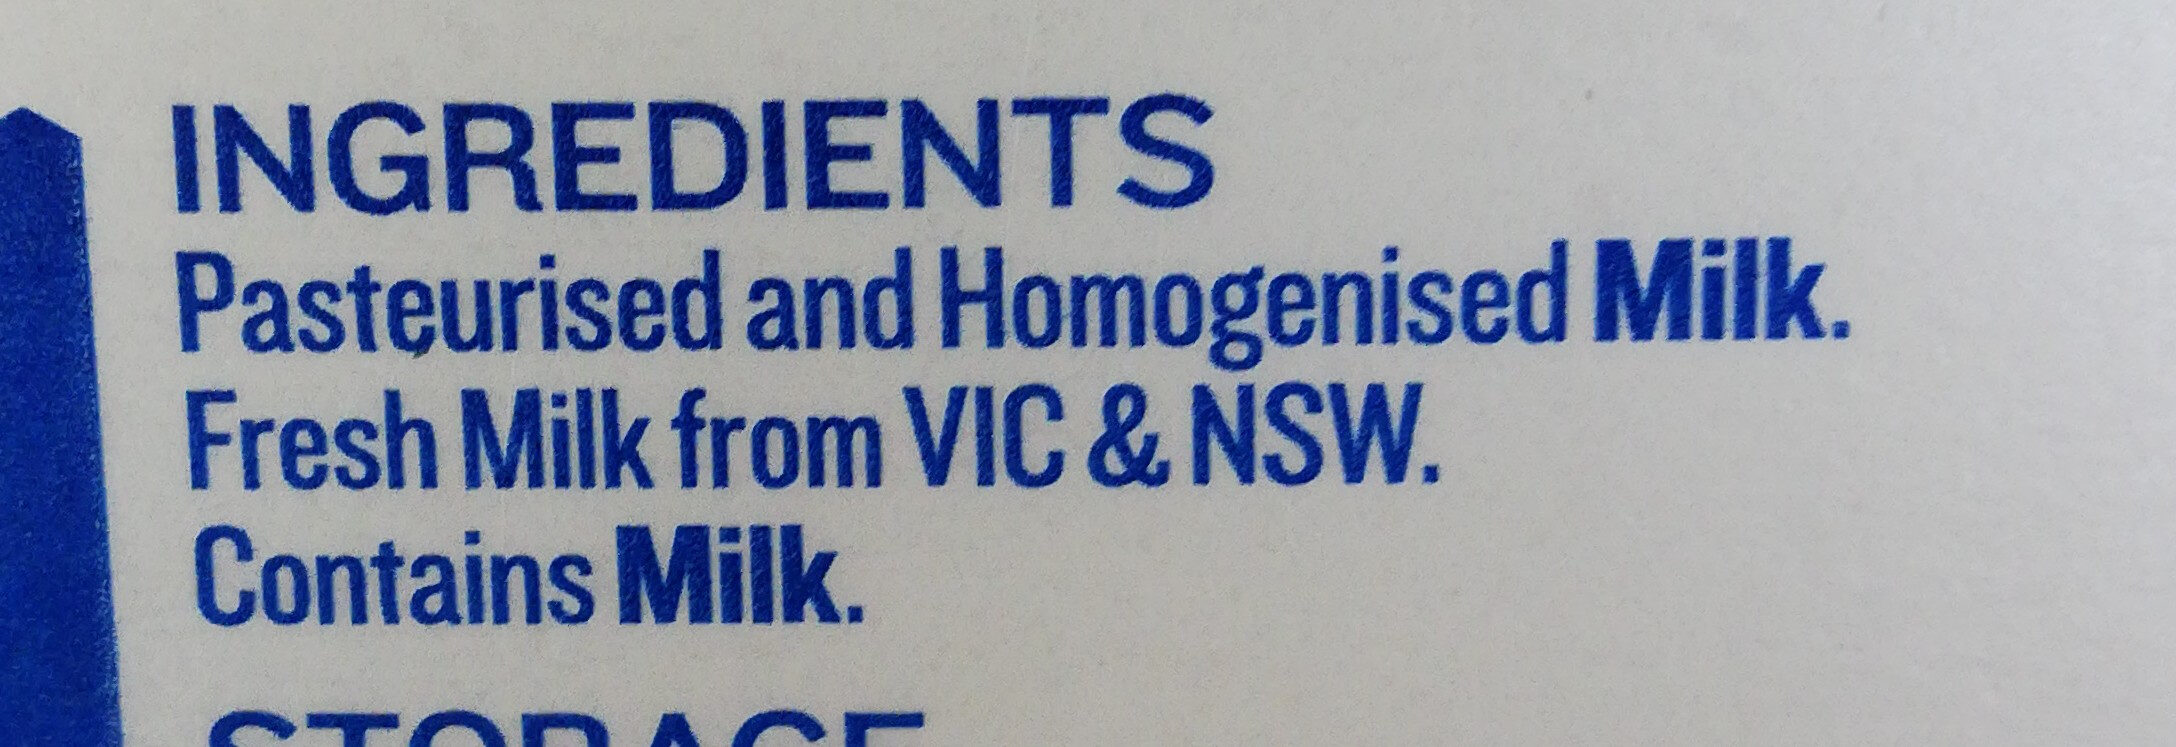 Australian Full Cream Milk - Ingredients